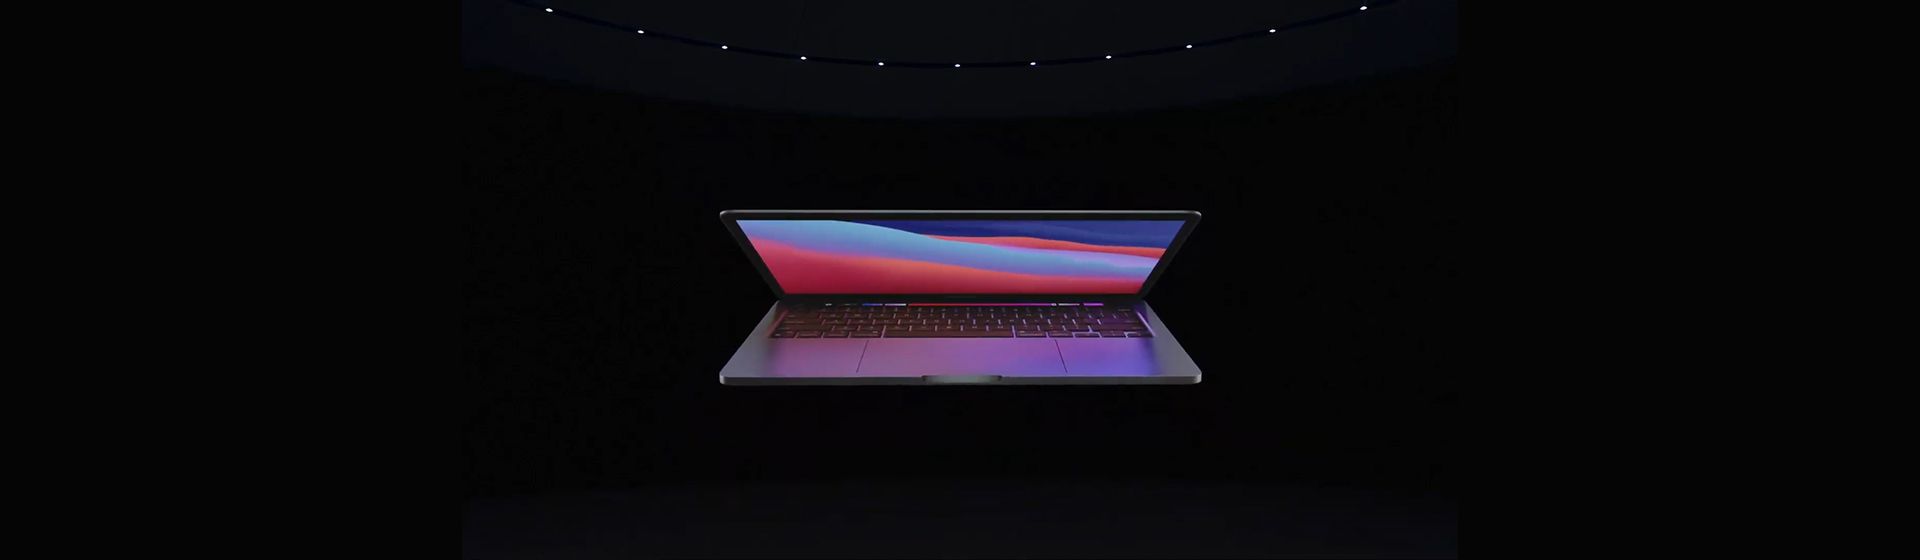 Capa do post: Apple M1 vs Intel Core: comparativo entre os MacBooks Pro 13 de 2020